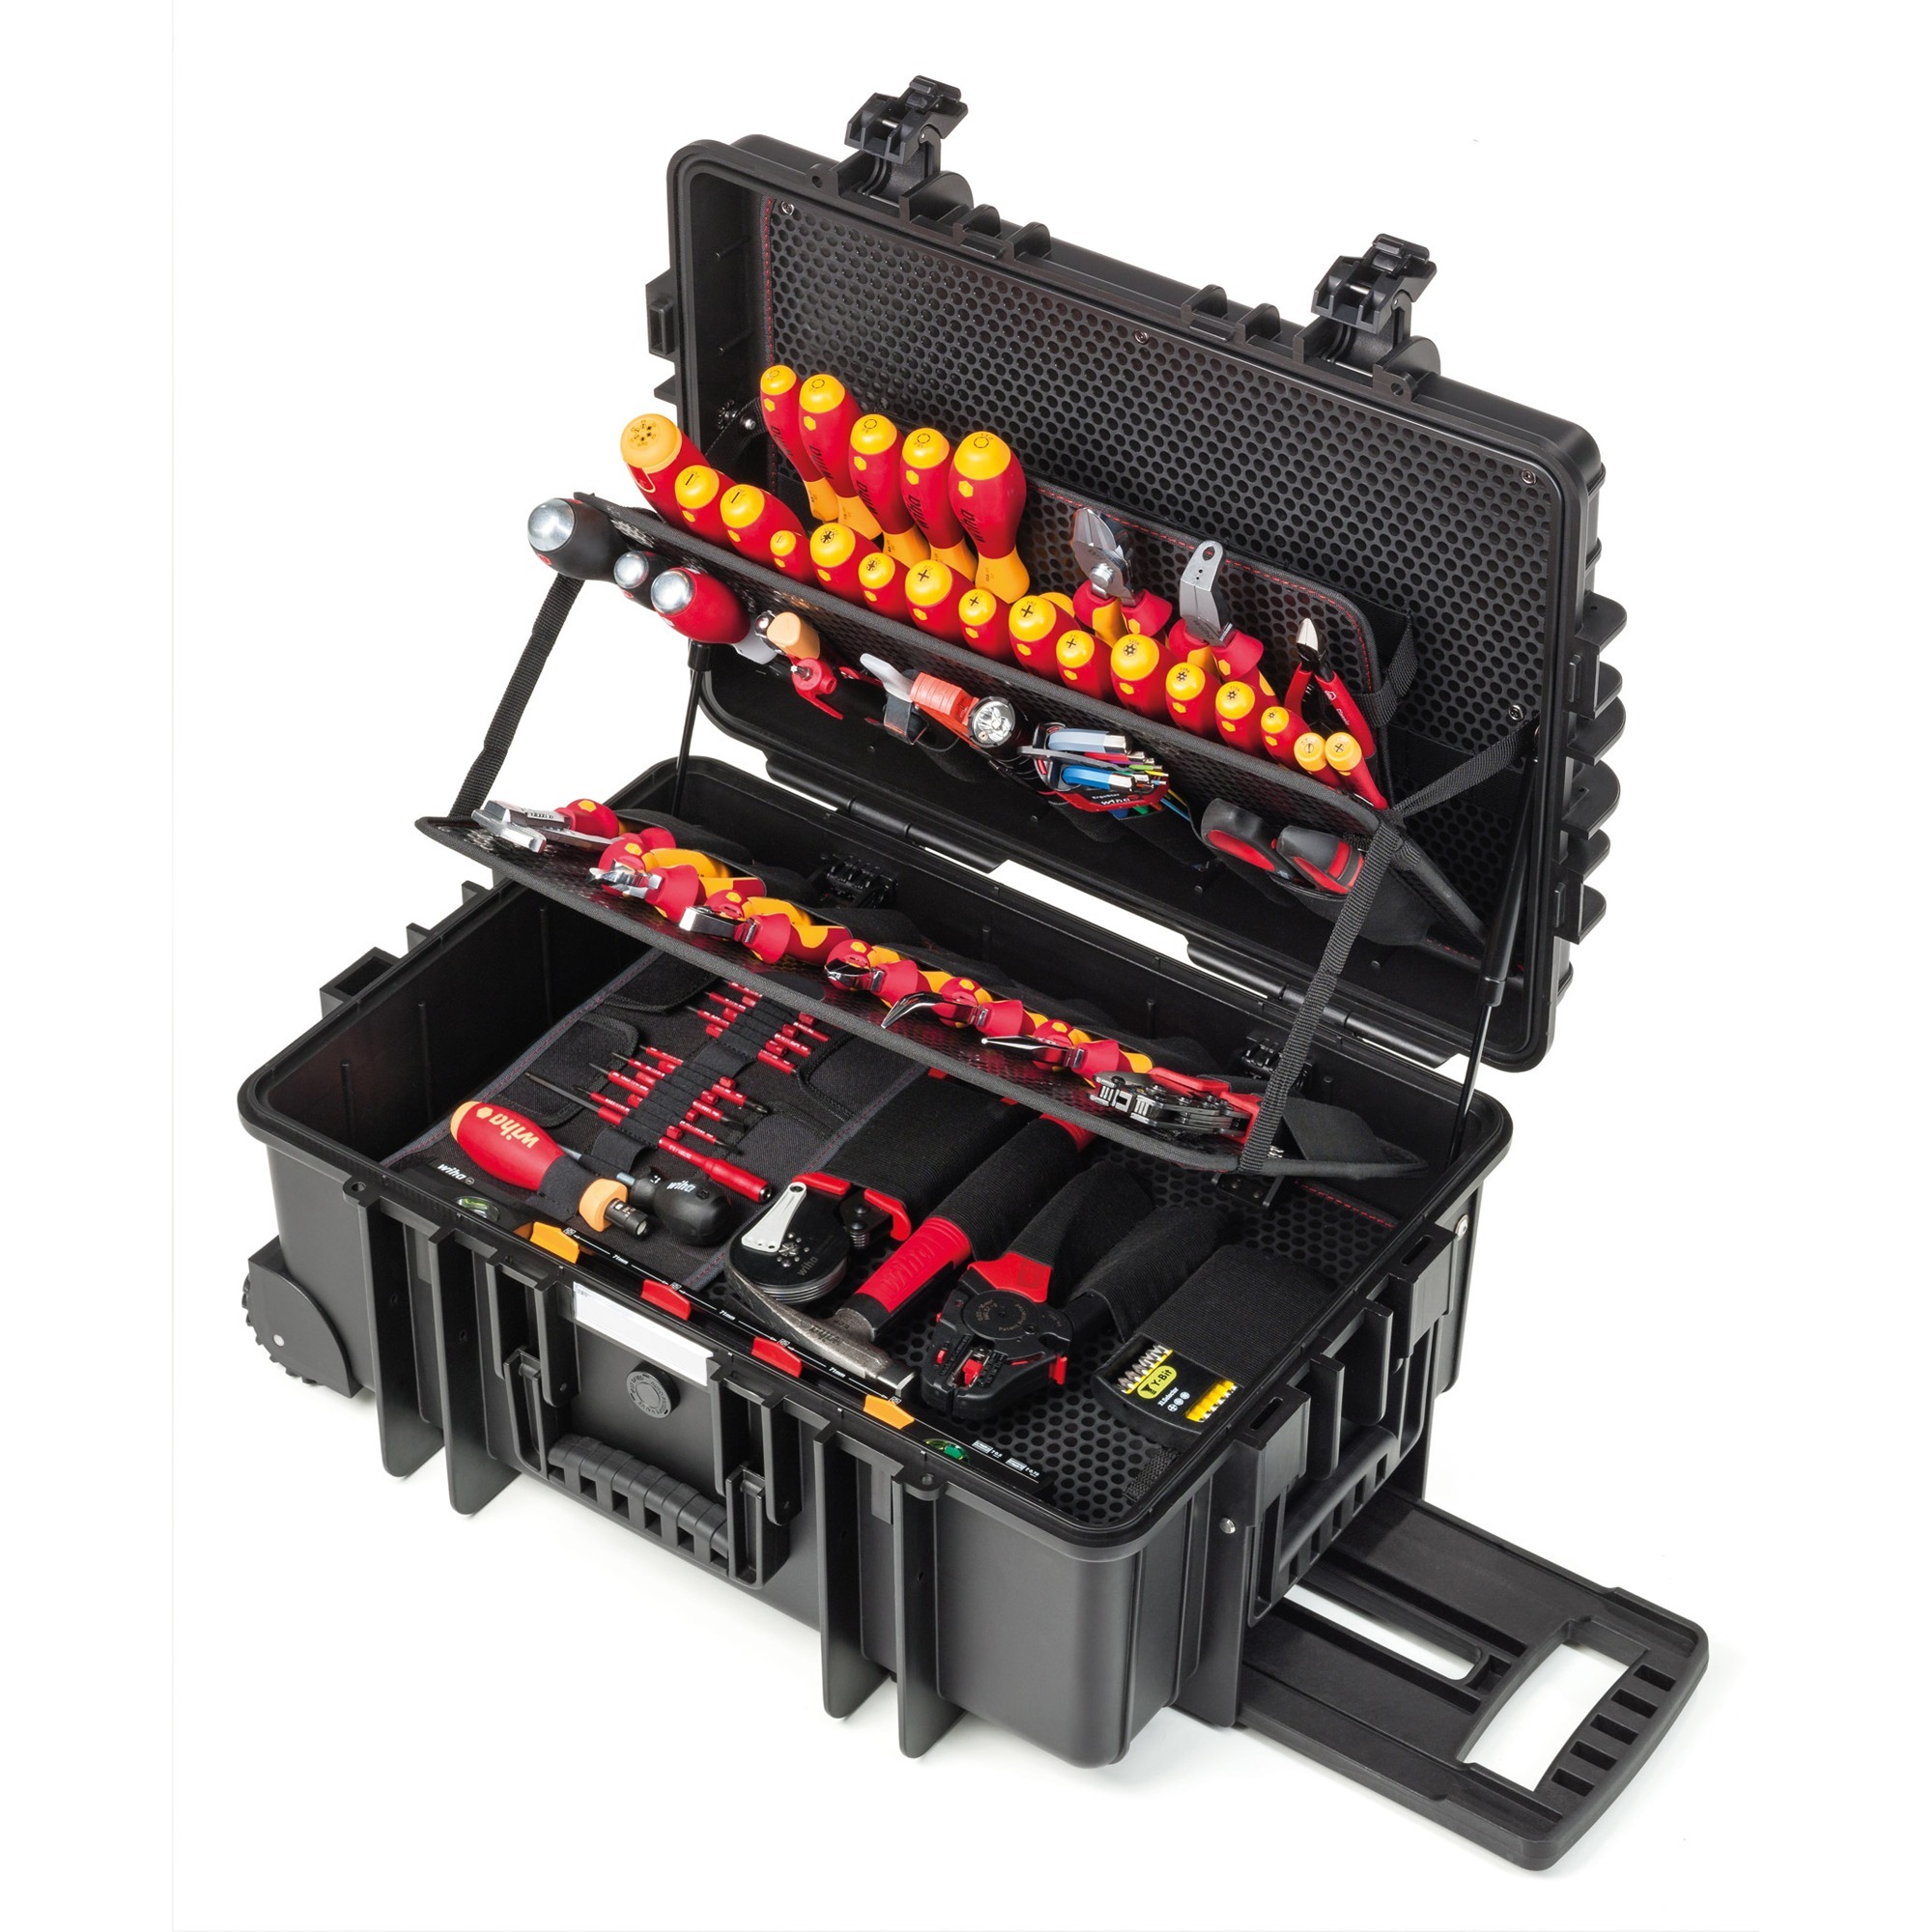 Image of Alternate - Werkzeug-Set Elektriker Competence XXL II online einkaufen bei Alternate